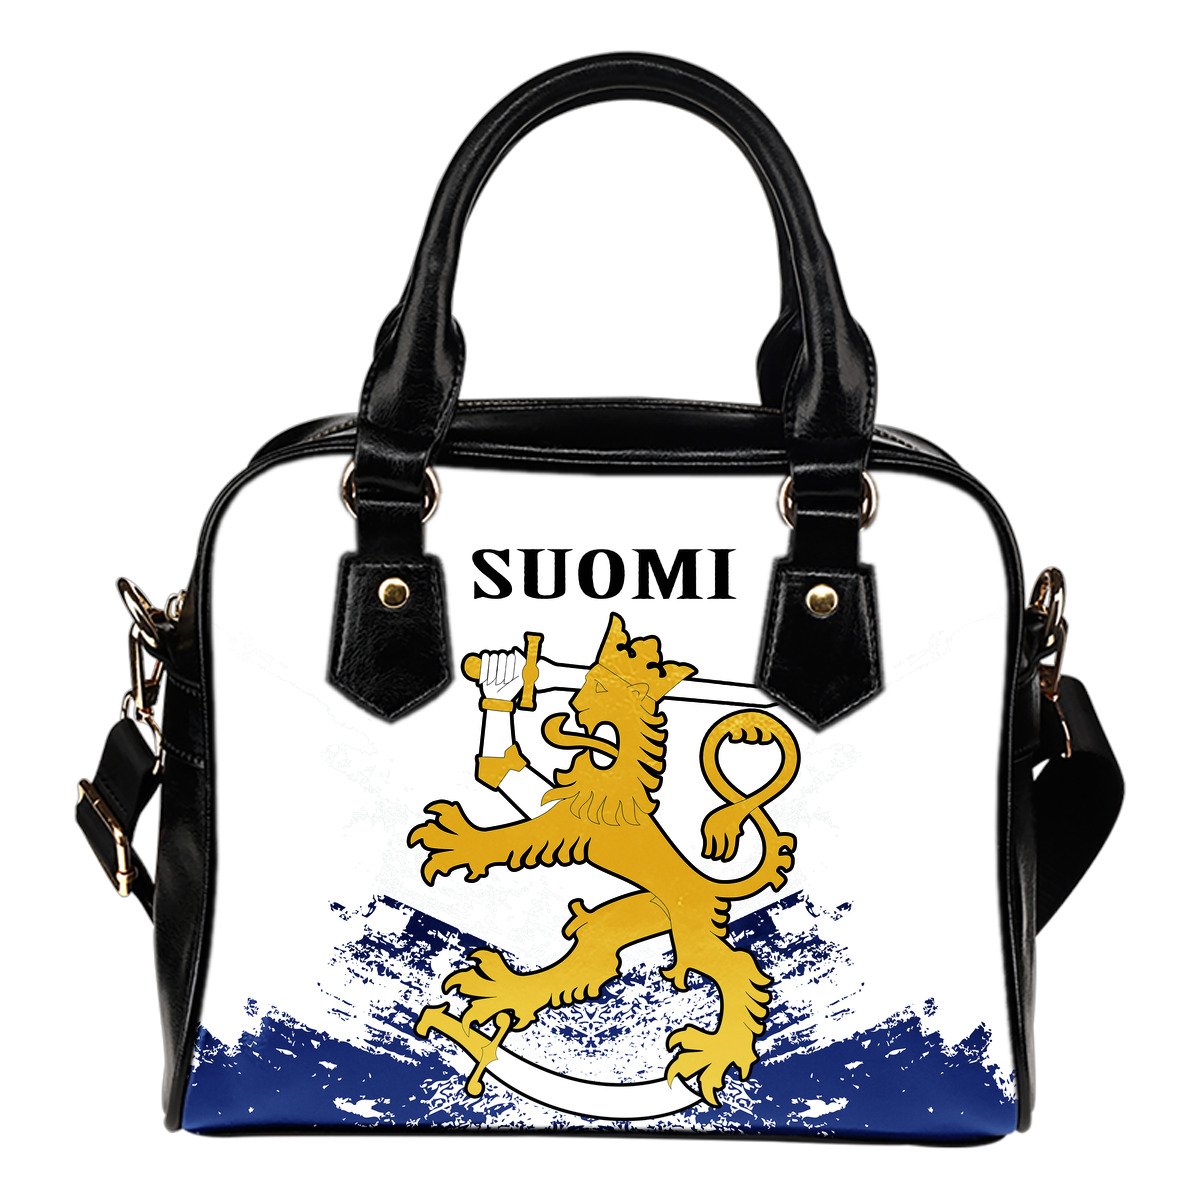 suomi-finland-special-shoulder-handbag